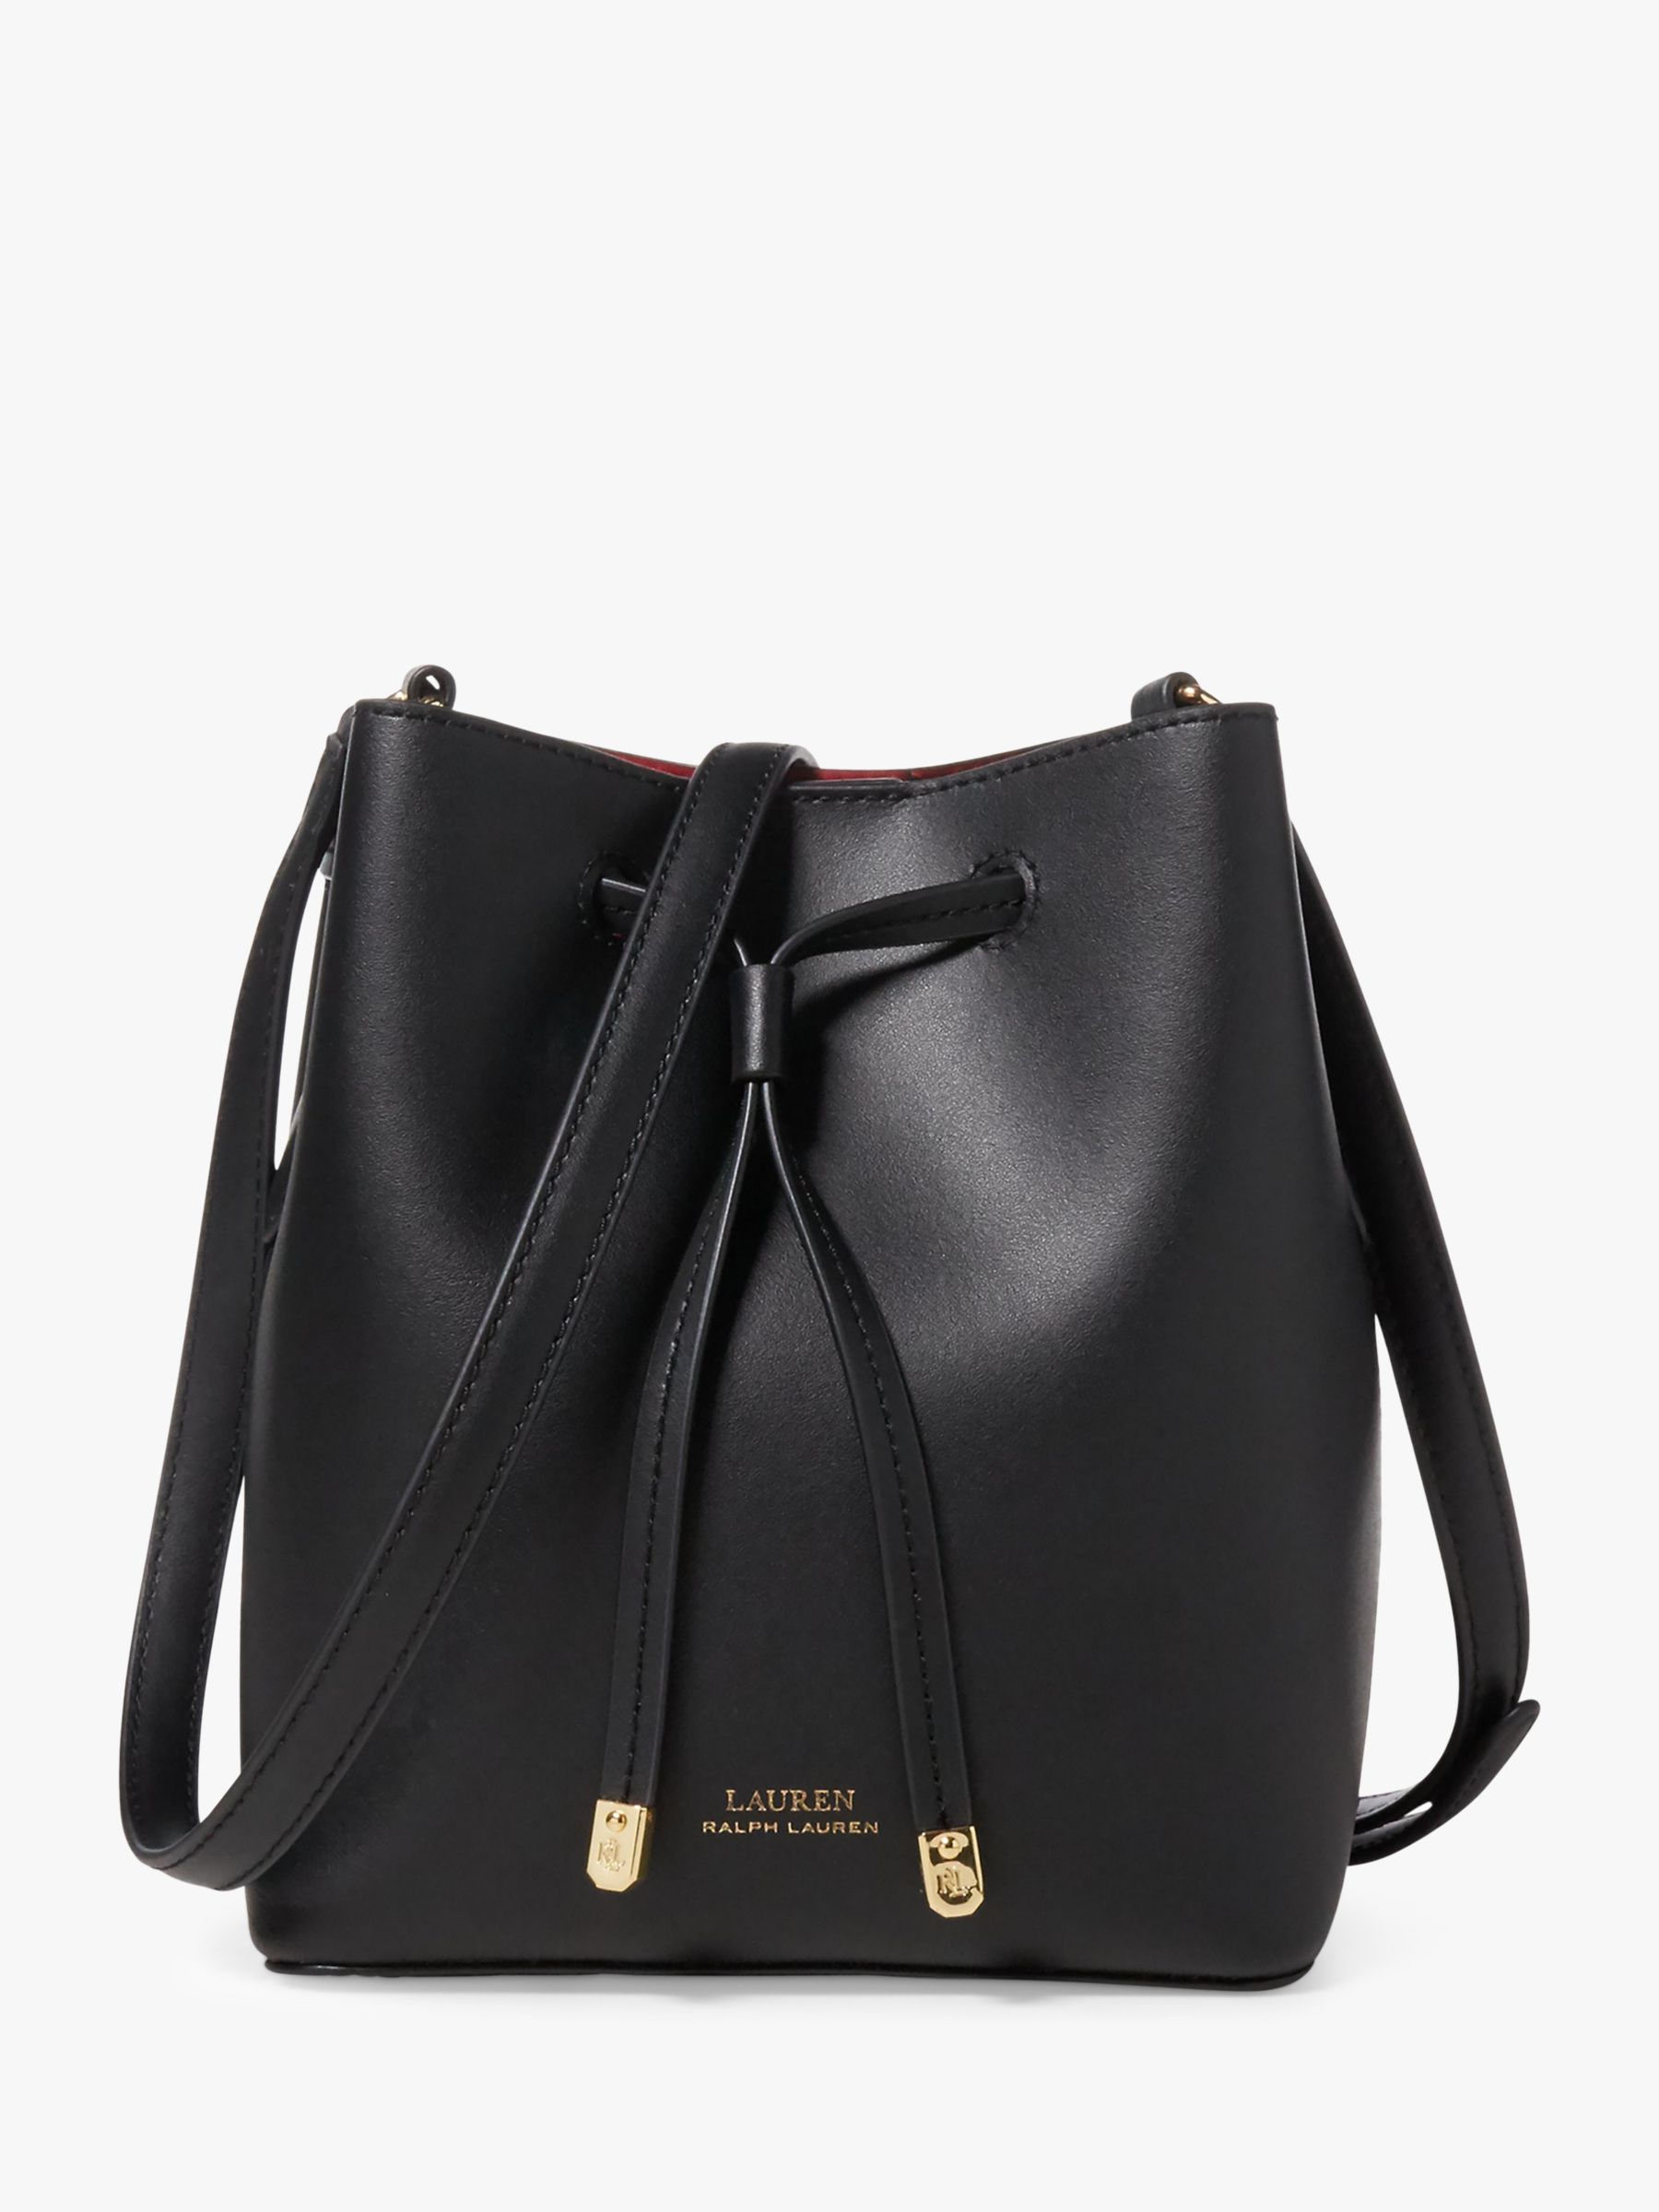 ralph lauren leather handbags